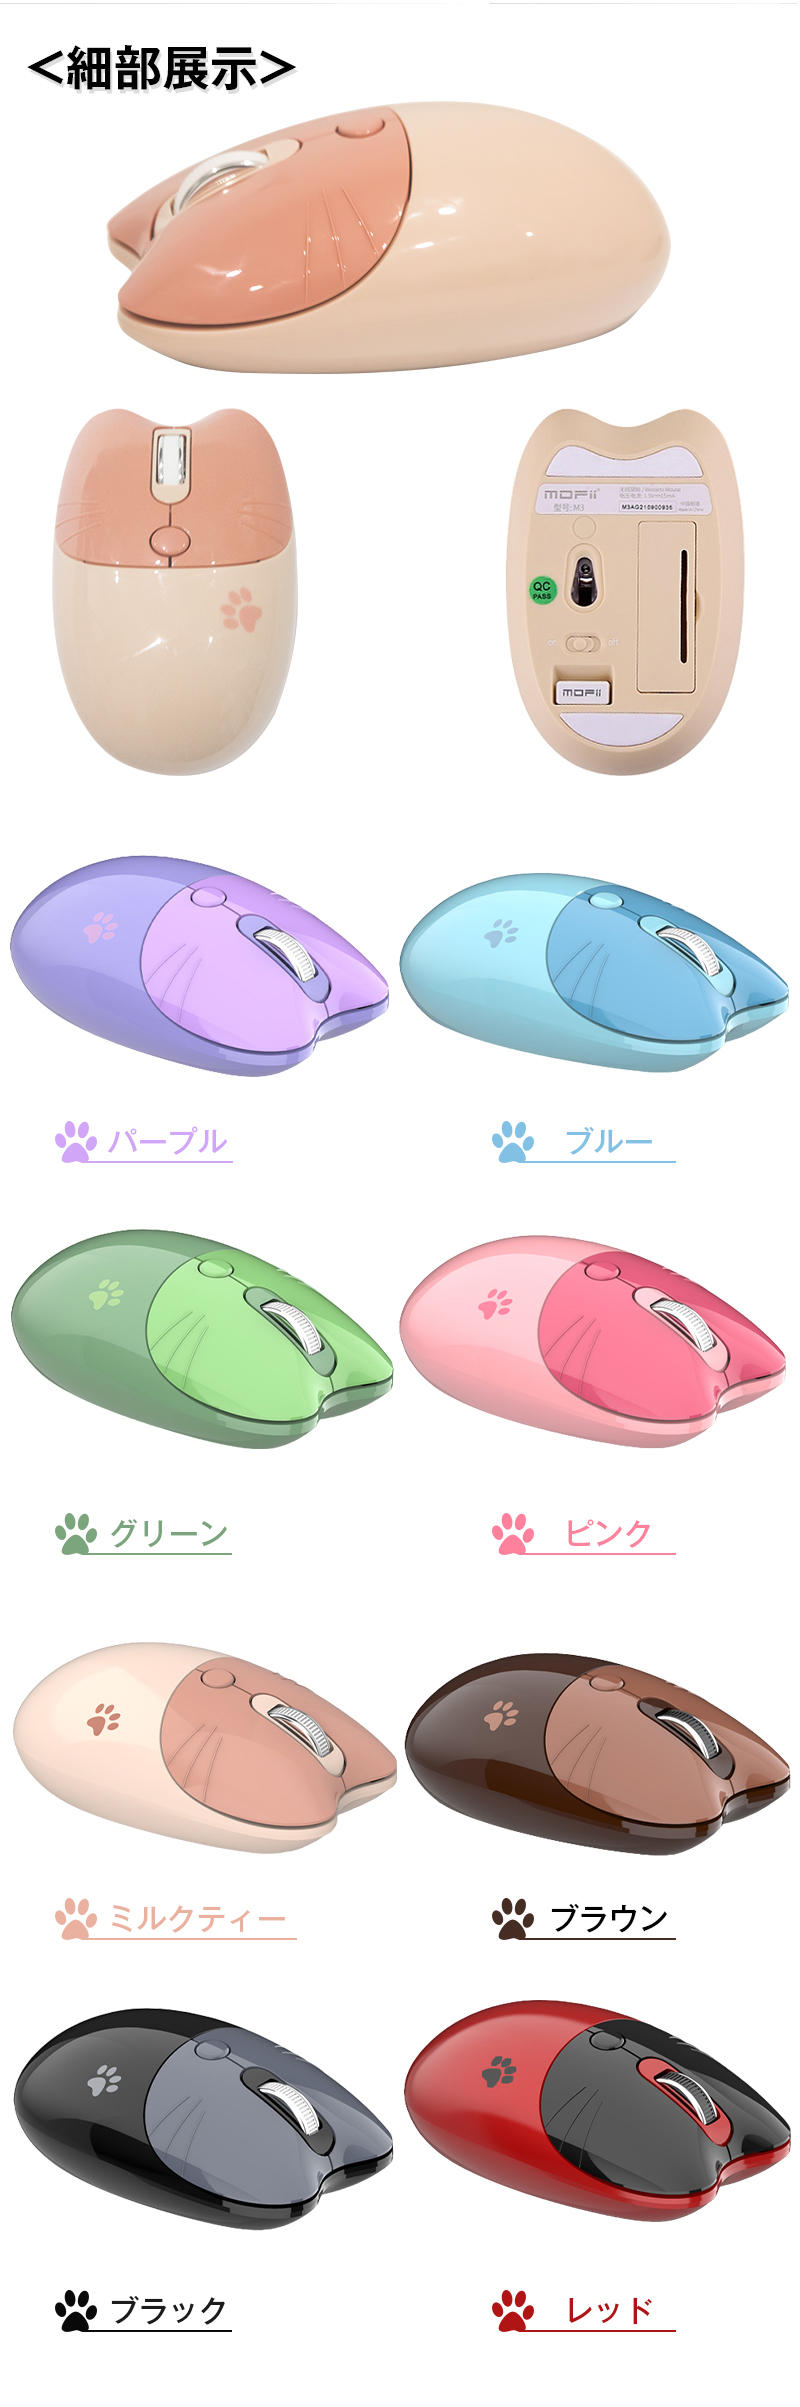 ワイヤレスマウス 2.4GHz 無線マウス Bluetoothマウス 可愛いネコ 猫耳 瞬時接続 3DPIモード人間工学 高感度 高精度 静音 省エネルギー  かわいい 動物デザイン 軽量 コンパクト  PC、ノートPC対応 - 5